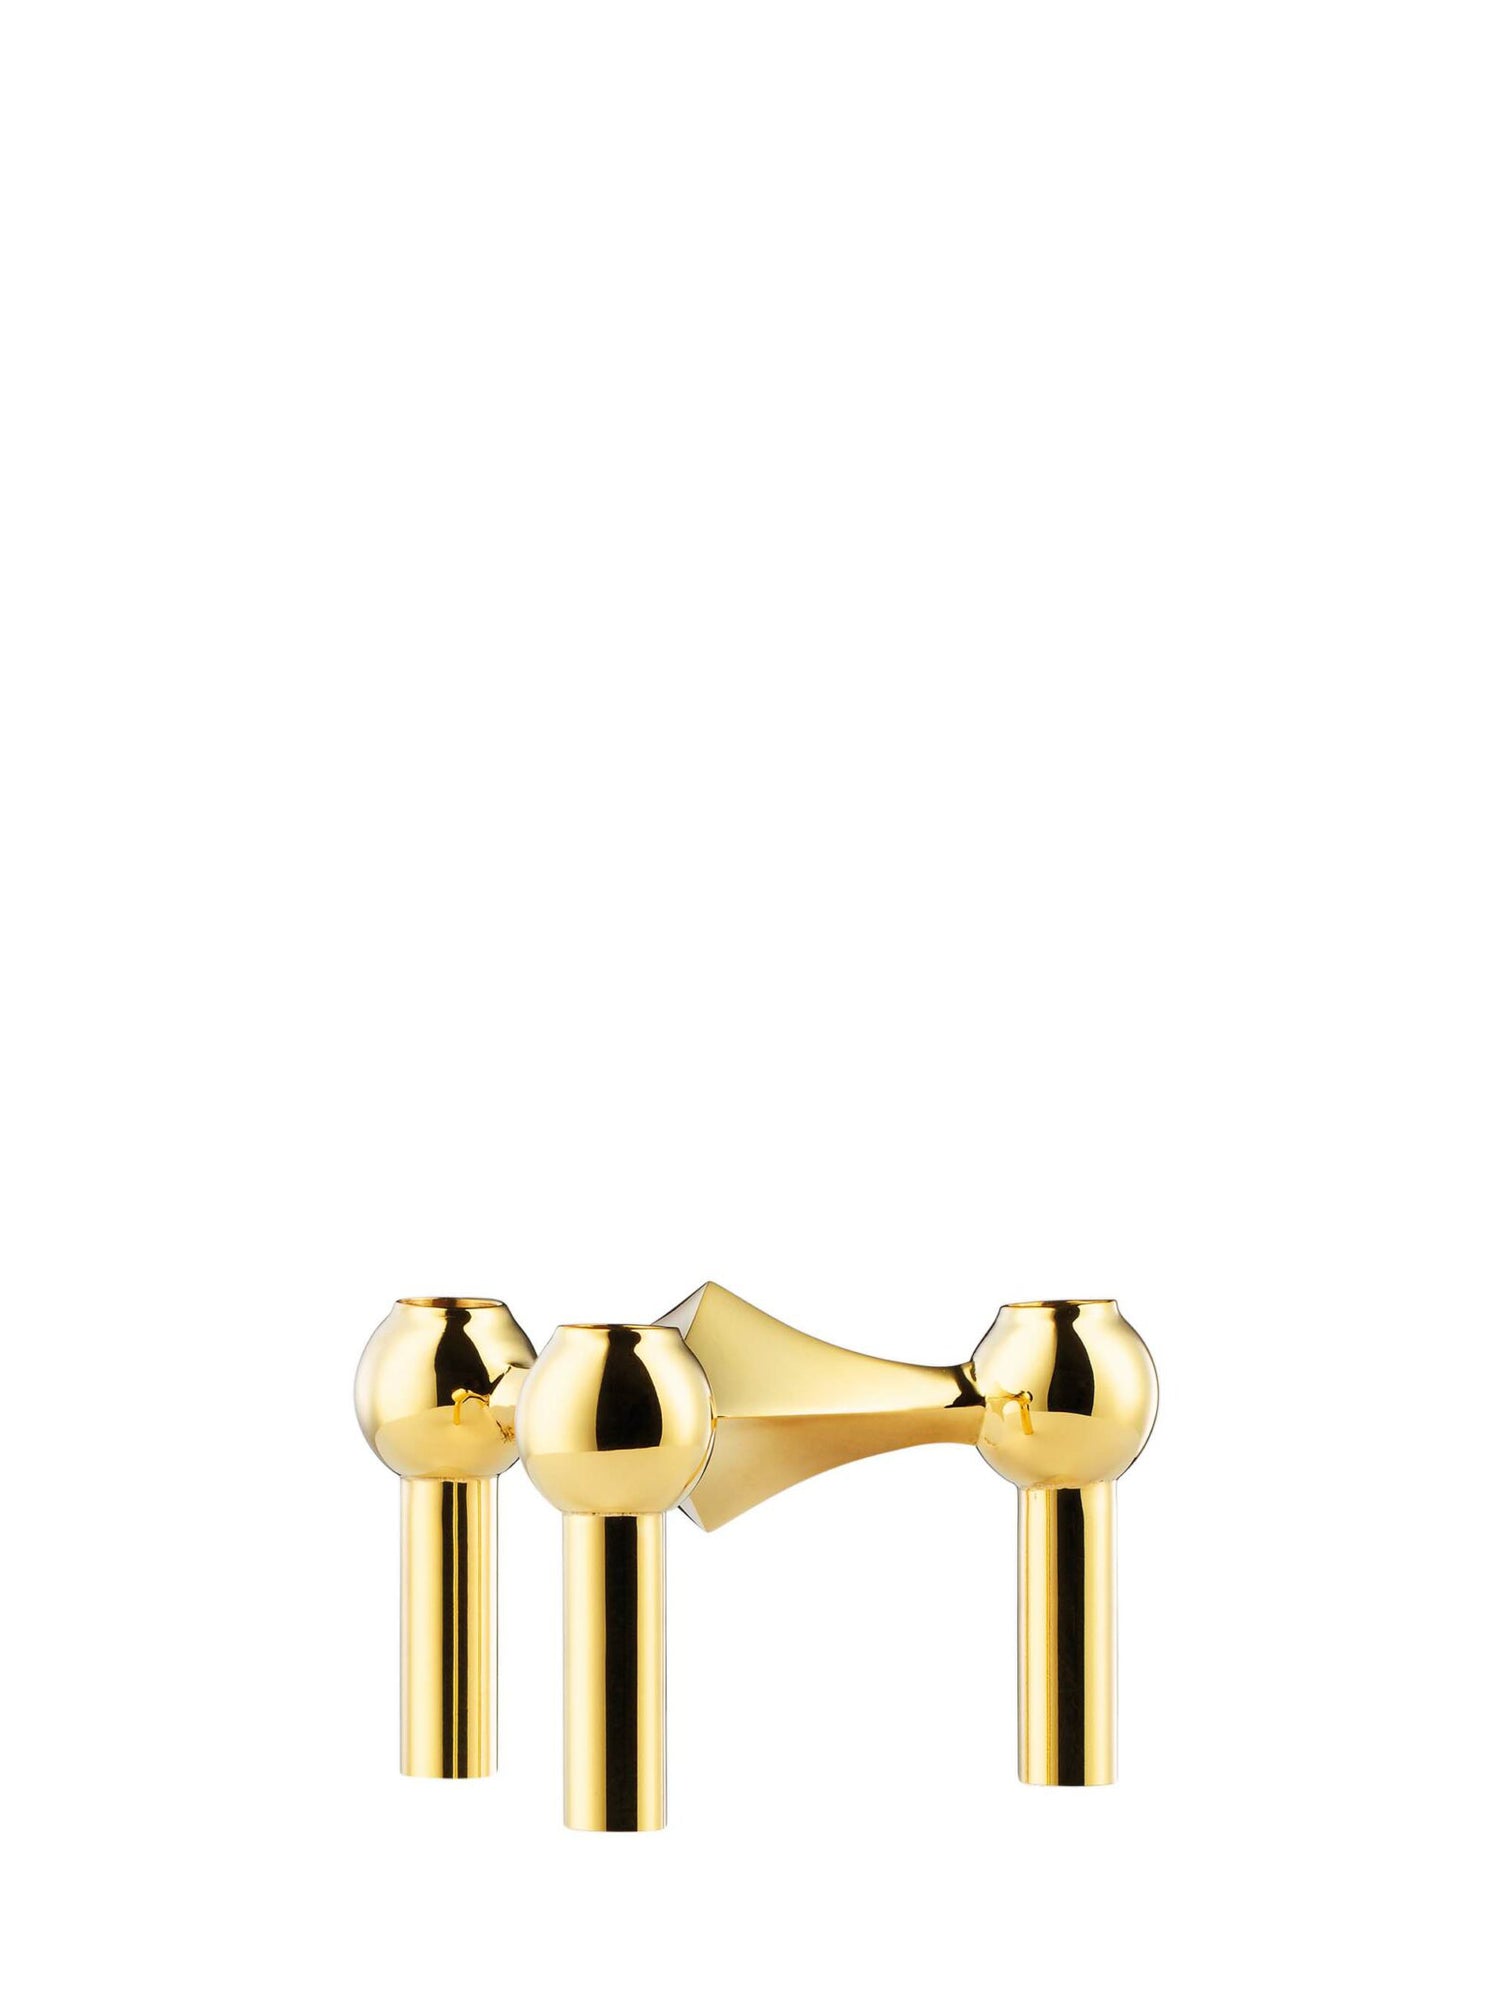 Nagel candle holder, solid brass